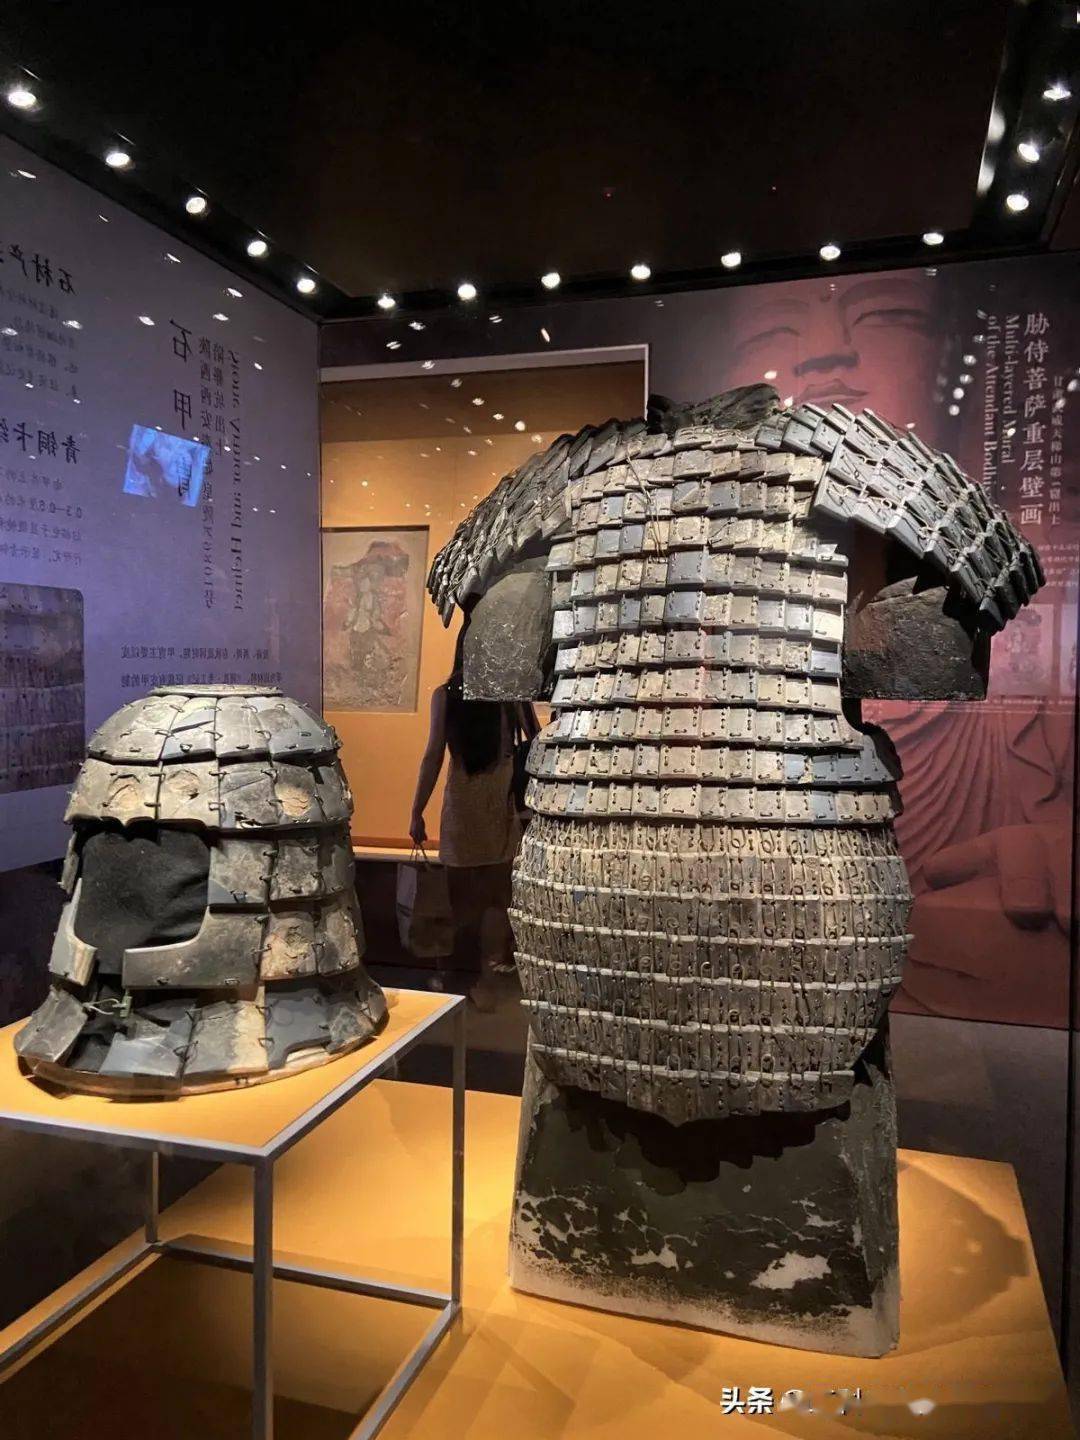 多亏秦始皇用石头做甲胄带在身边,如果是青铜的或铁的铠甲(秦代铁器还